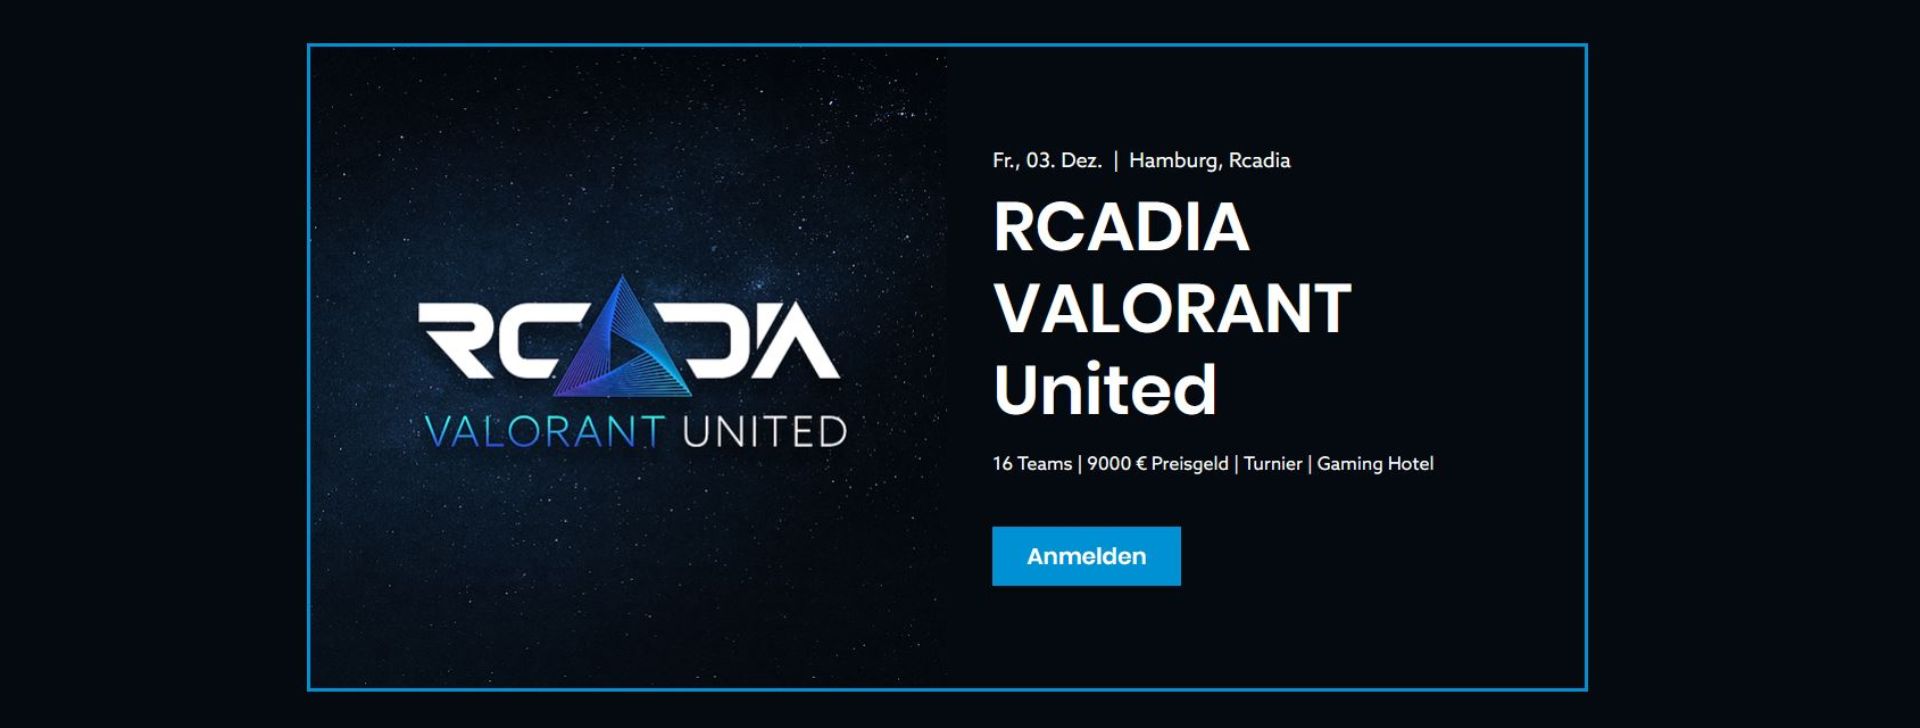 Ein Turnier der besonderen Art: Rcadia VALORANT United in Hamburg